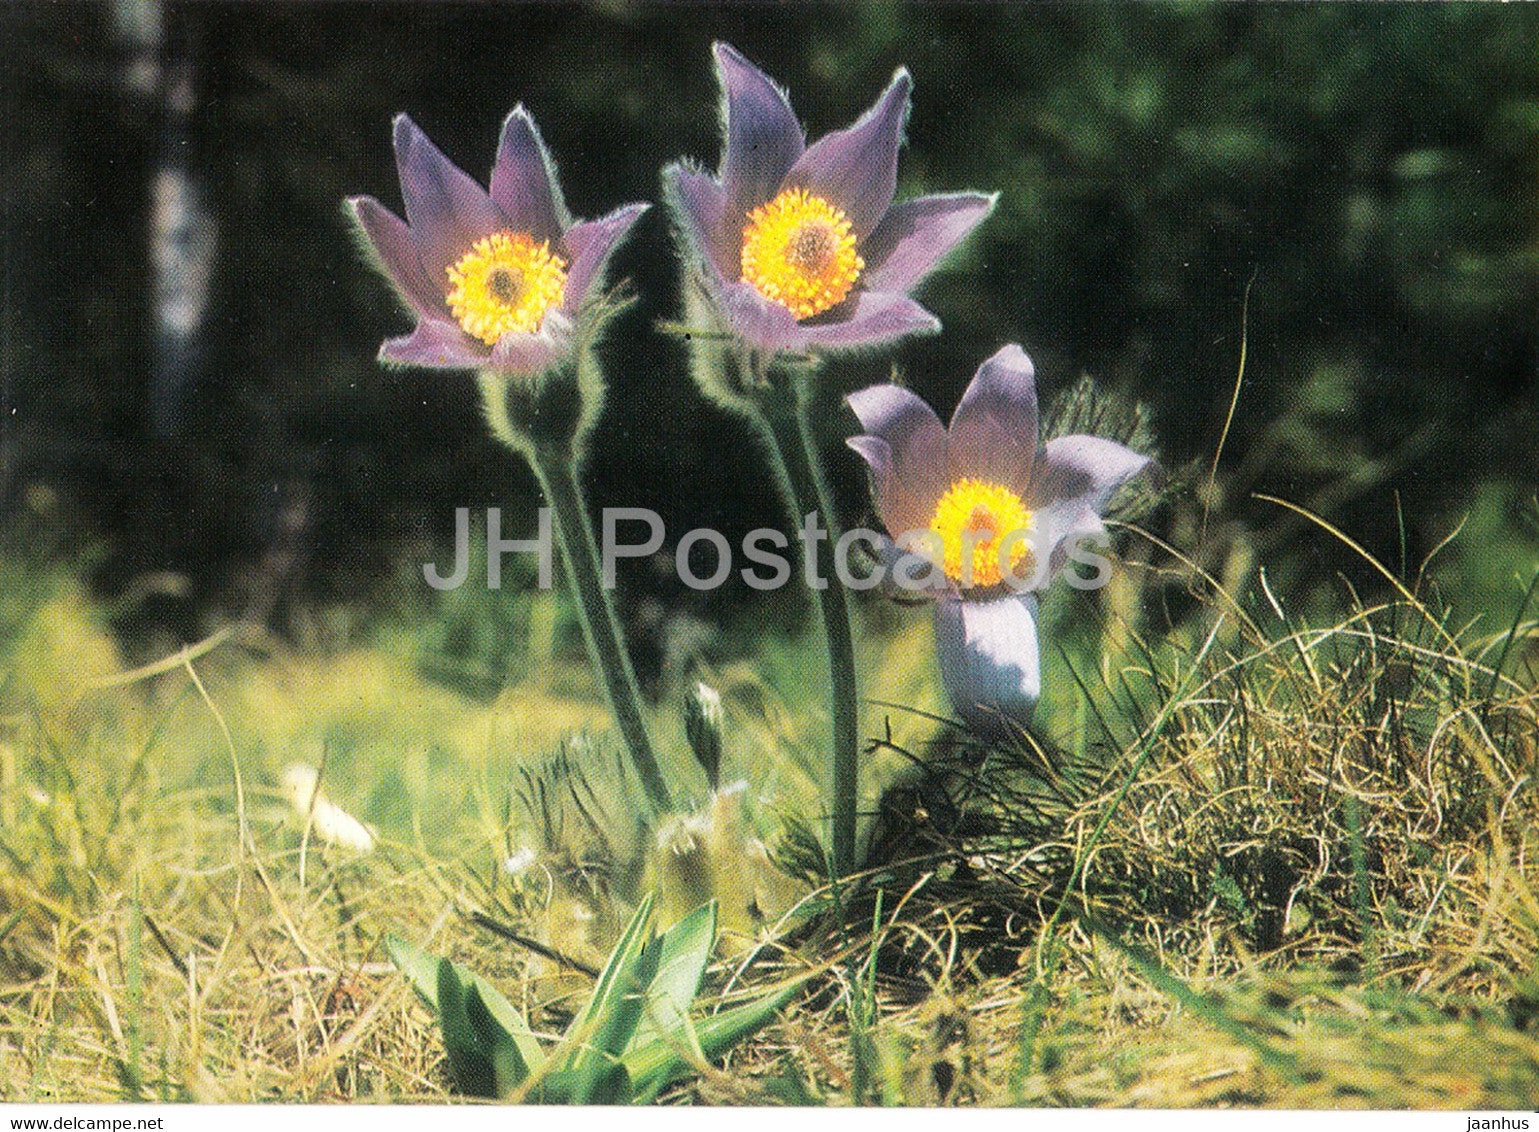 Eastern pasqueflower - flowers - plants - Bulgaria - unused - JH Postcards